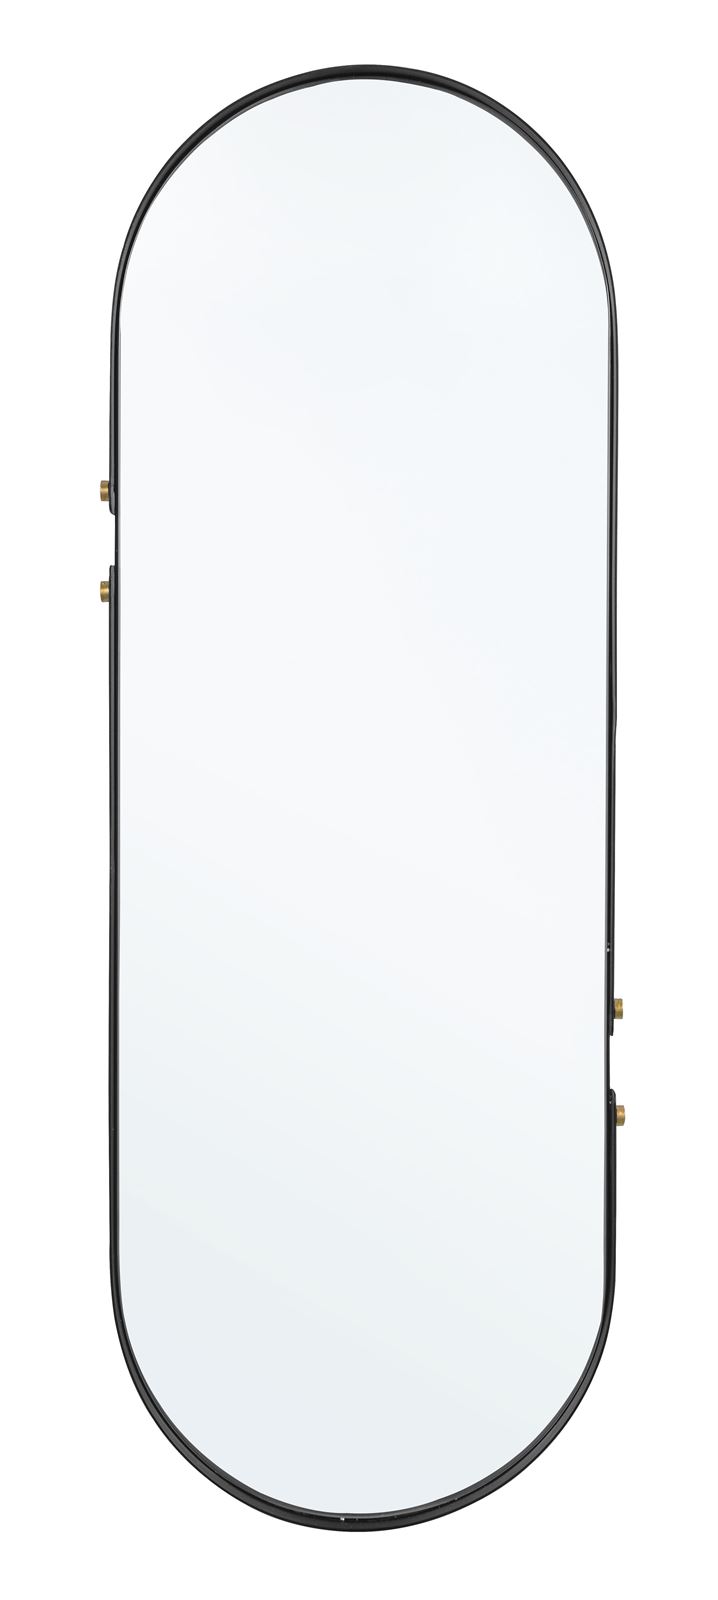 Espejo Ovalado metálico - Imagen 1